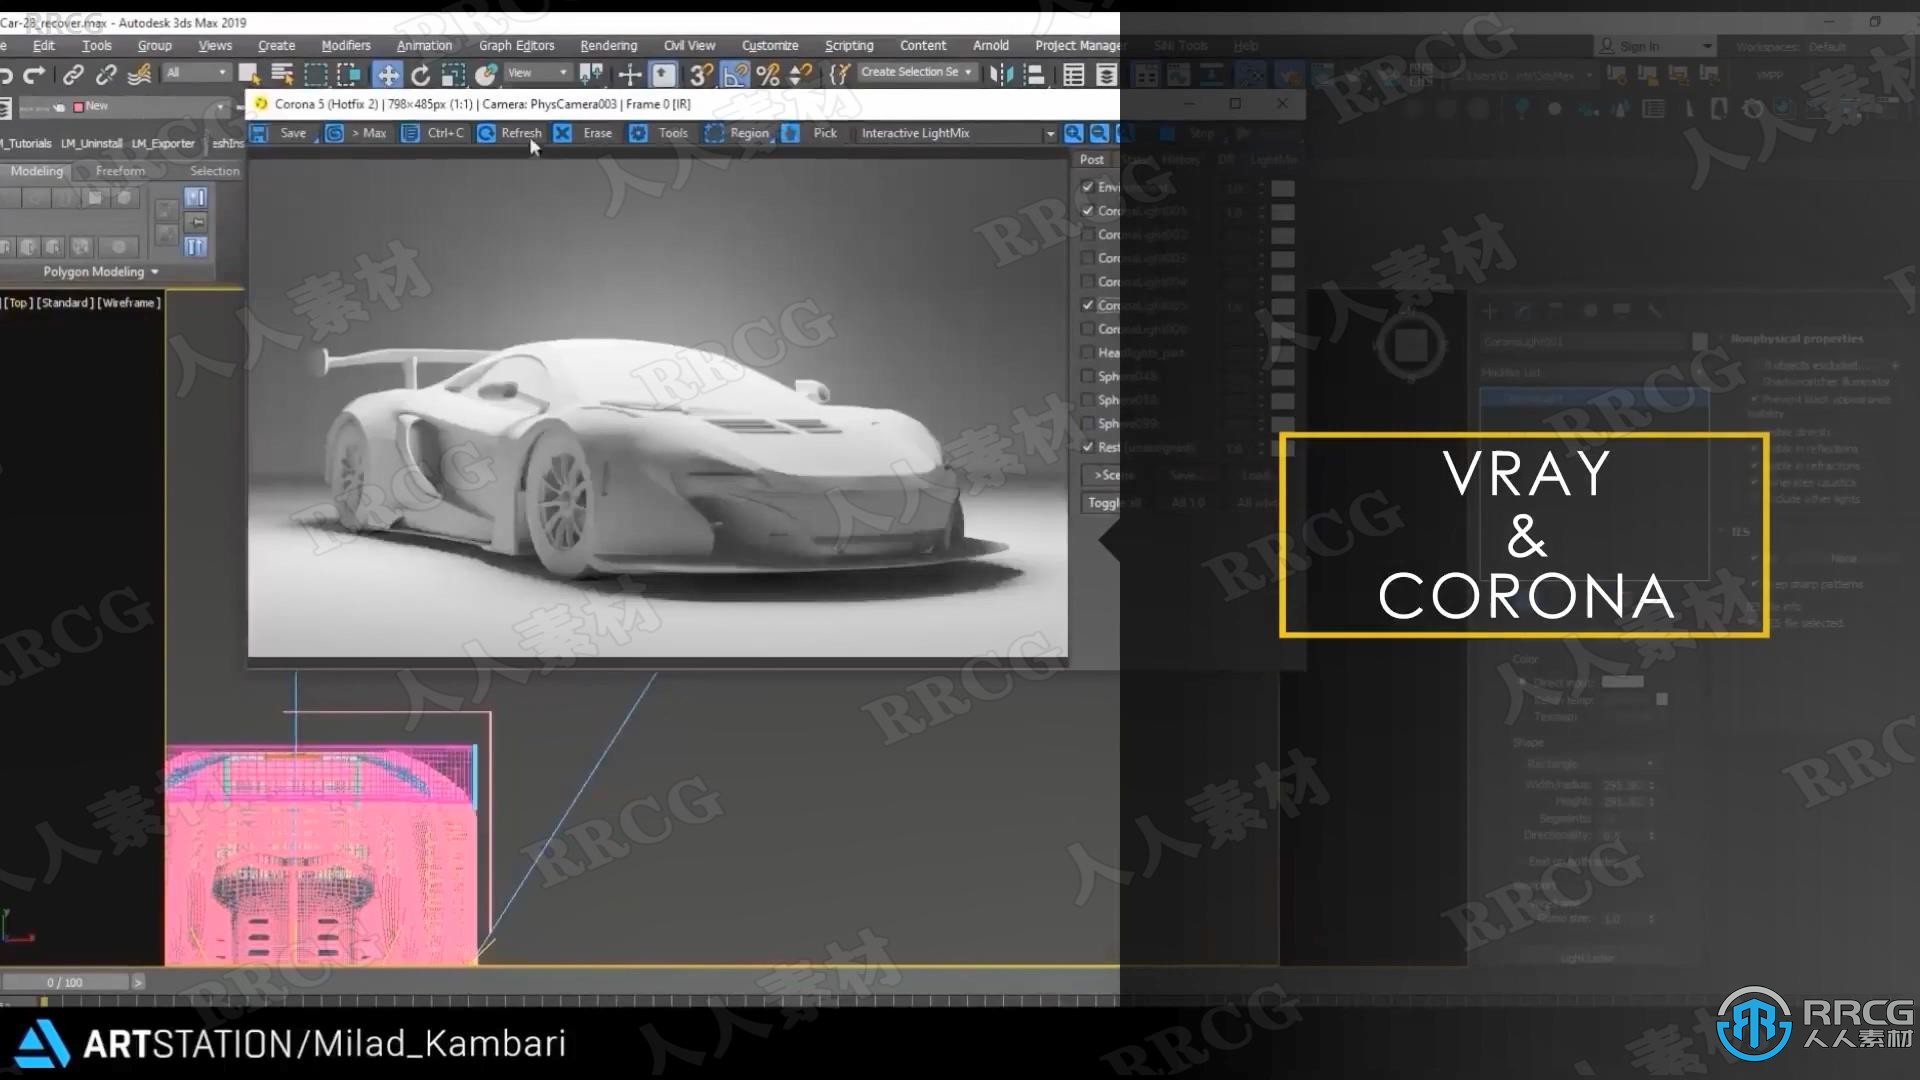 迈凯伦650S GT3超跑汽车完整制作流程视频教程